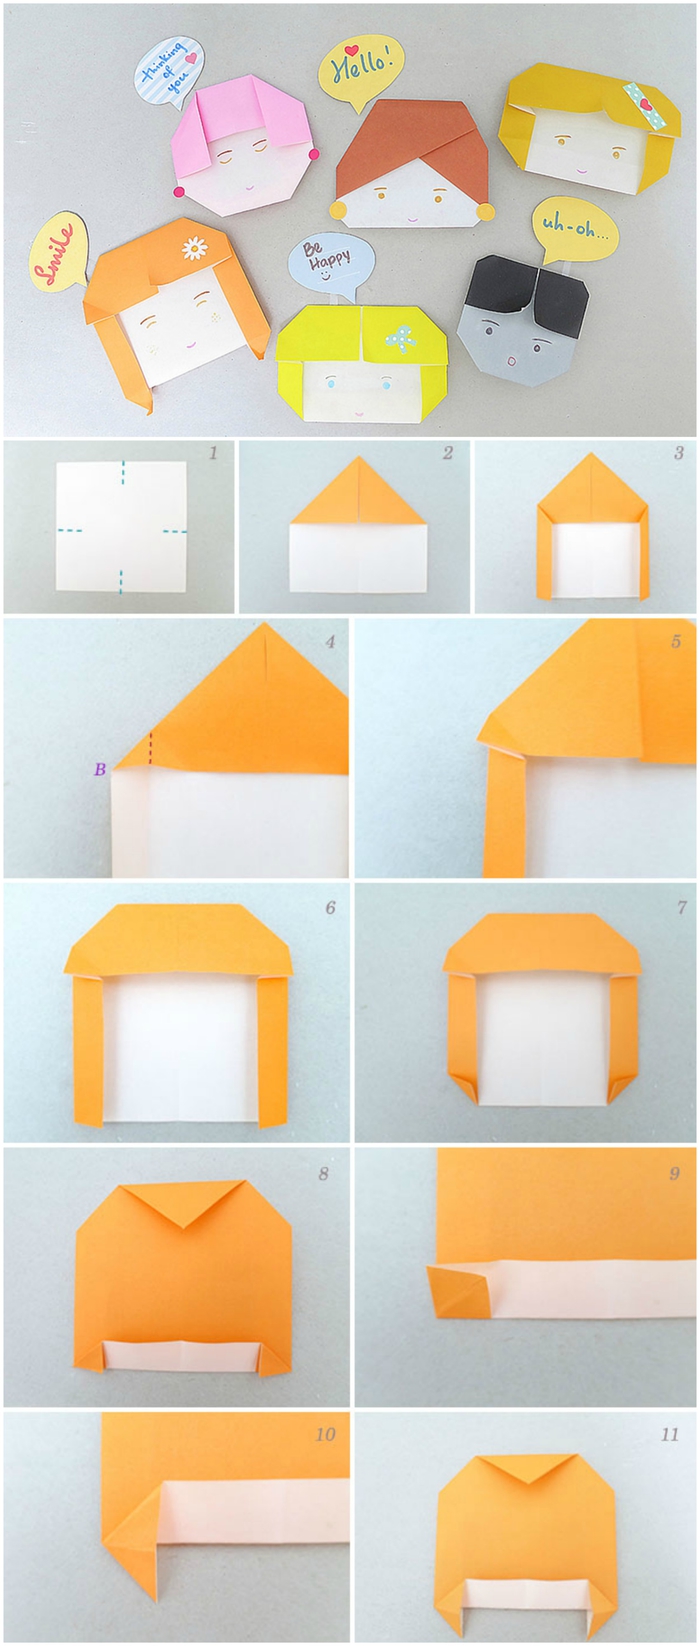 activité manuelle ludique avec des modèles d'origami enfant, têtes de personnages rigolos réalisées en papier et faciles à personnaliser 